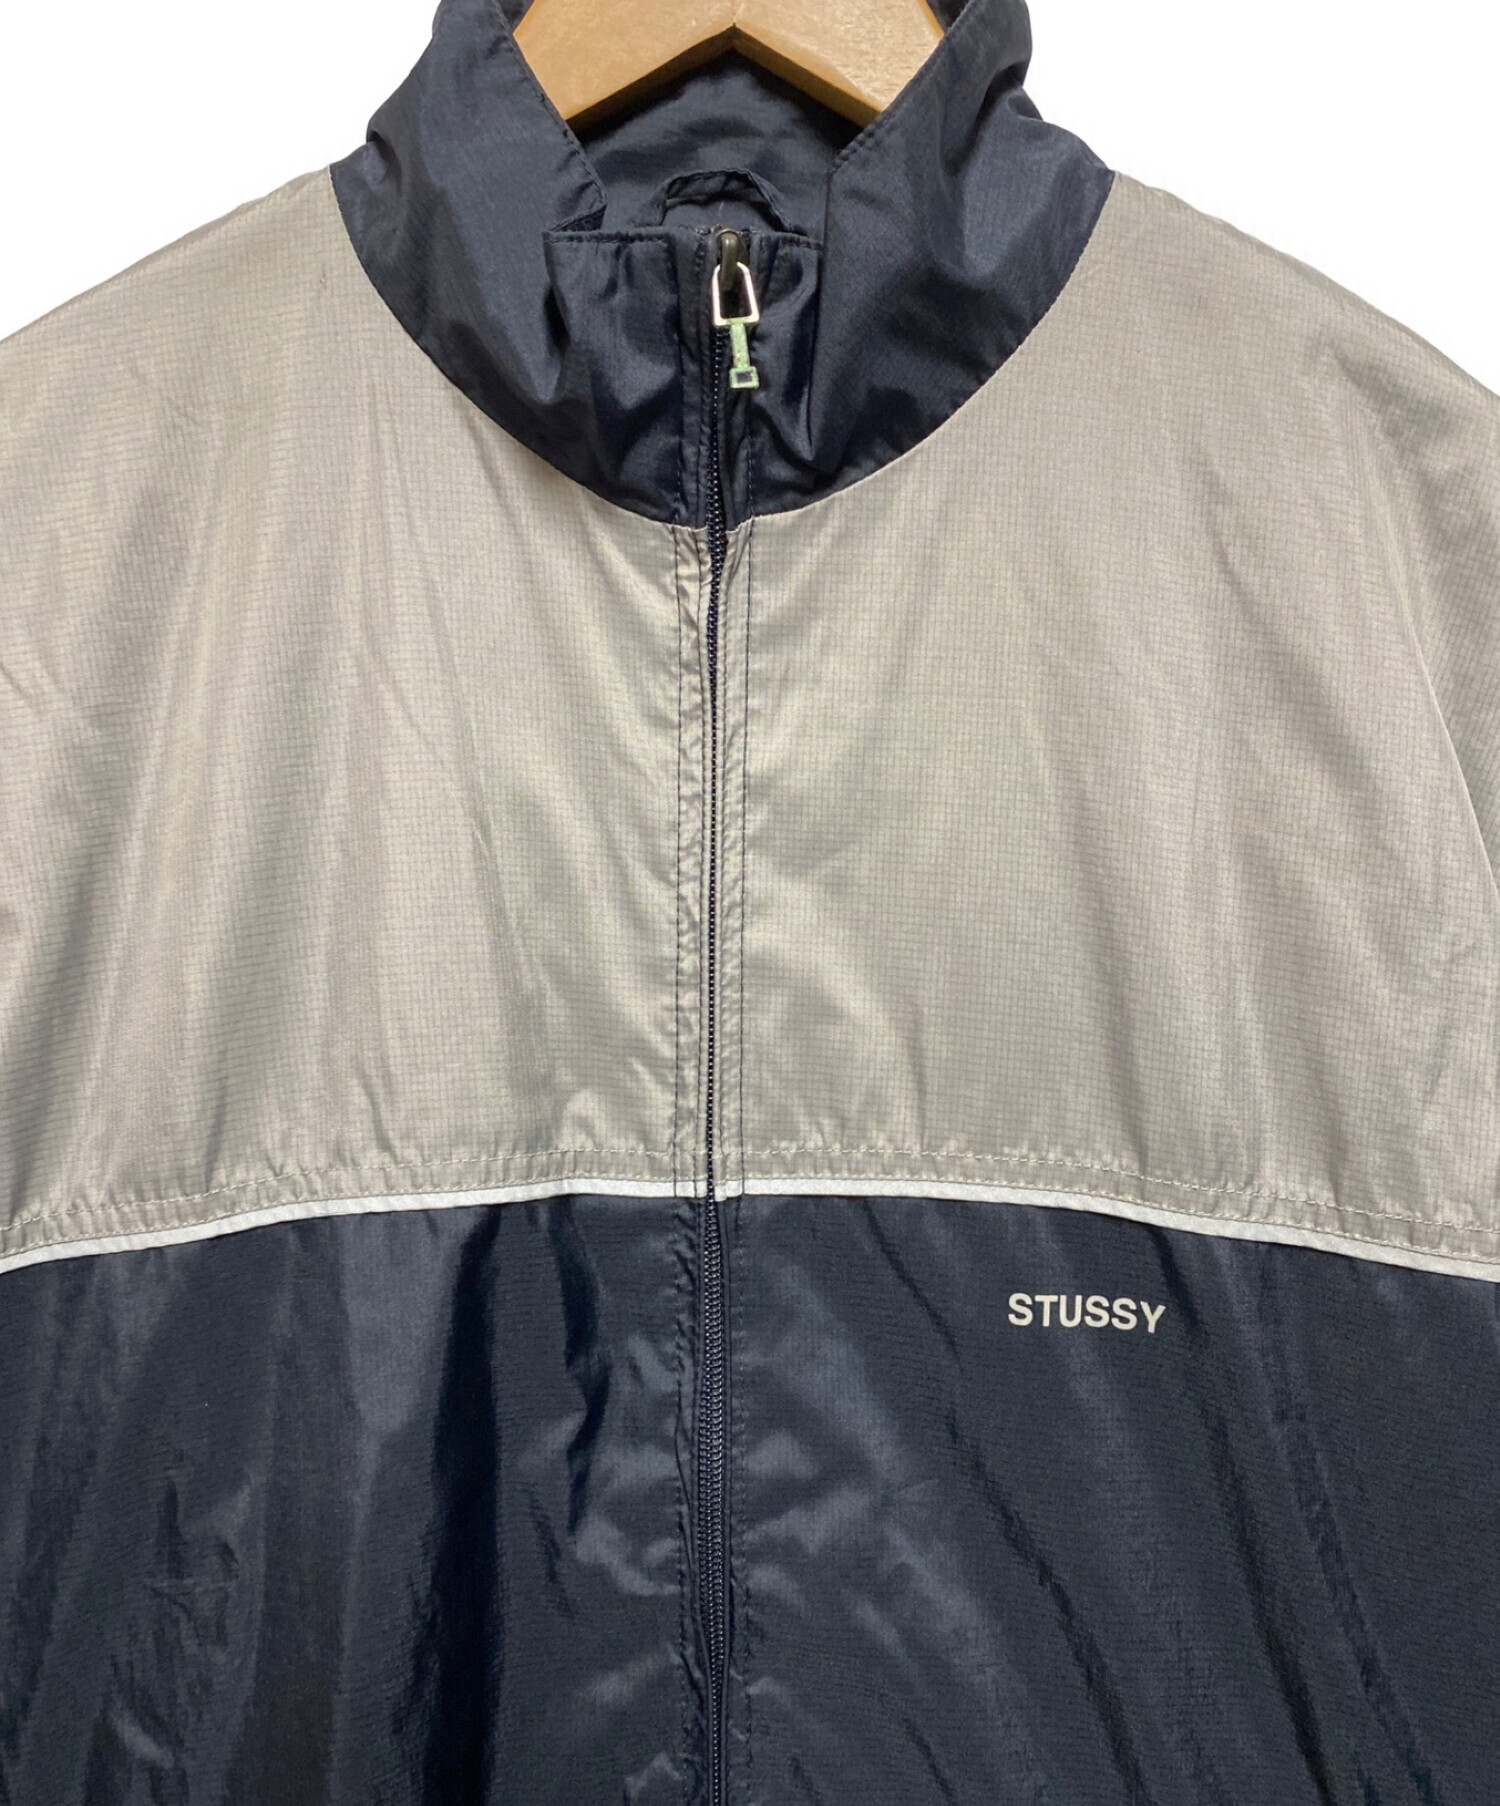 stussy (ステューシー) 00's リフレクターナイロンジャケット ブラック×グレー サイズ:L